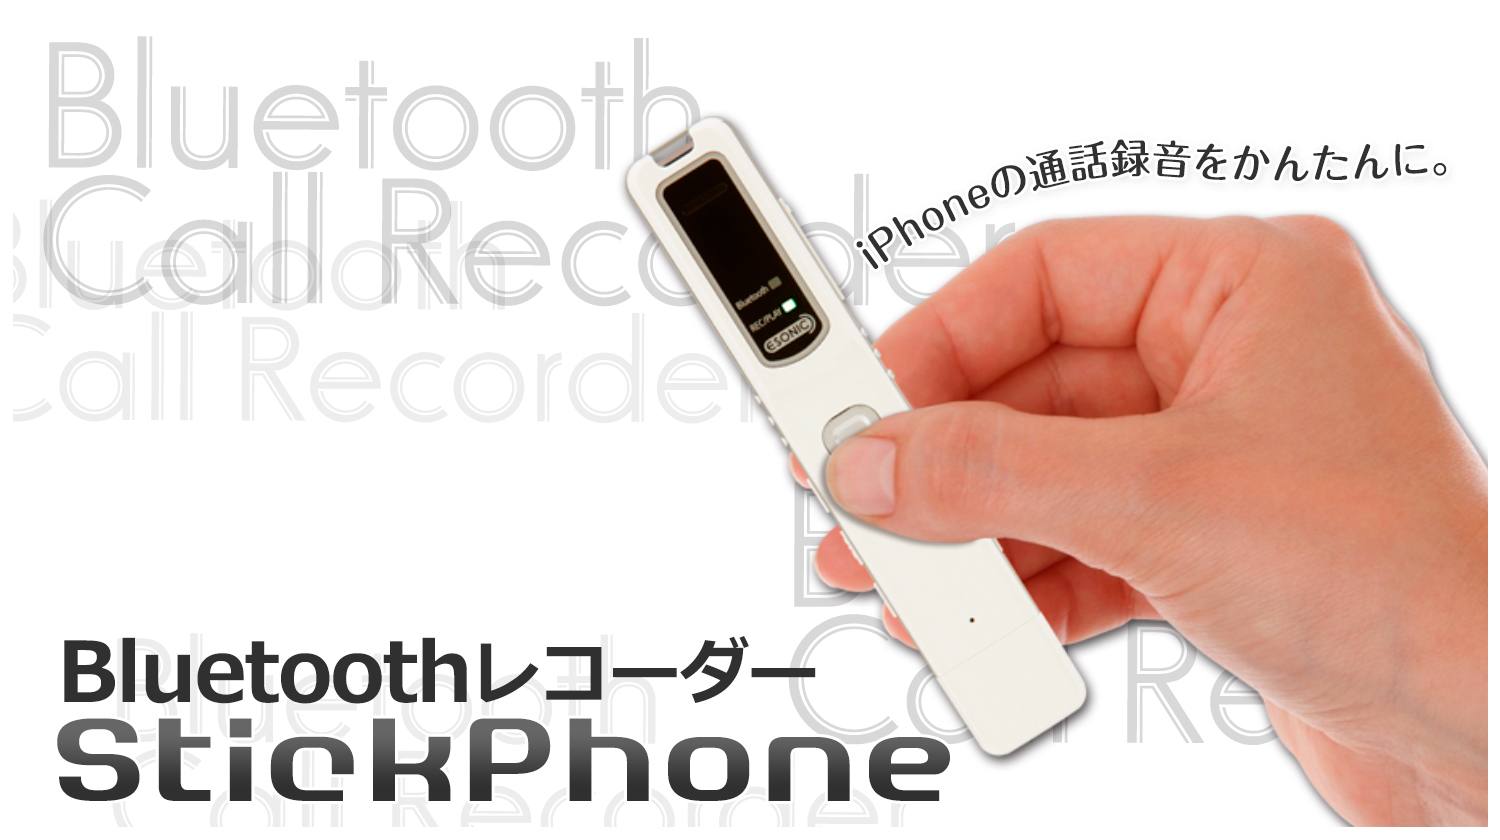 Iphoneでも通話内容を録音 Bluetooth レコーダー Stickphone を発売 プラススタイル株式会社のプレスリリース